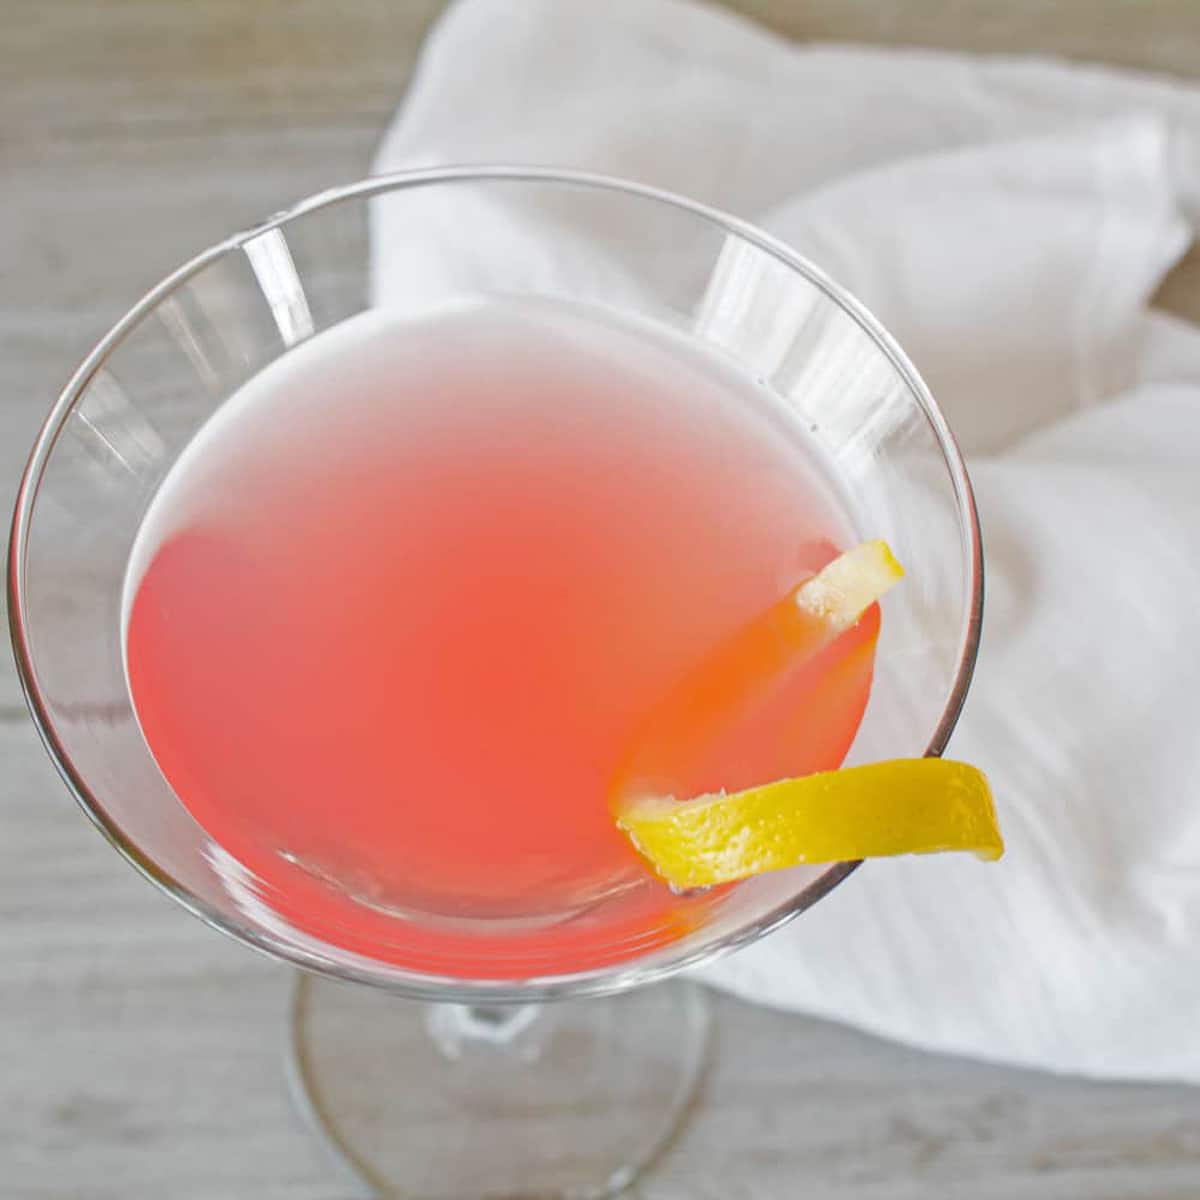 Kosmopolitisk cocktail vinklad och tittade ner i ett martiniglas.